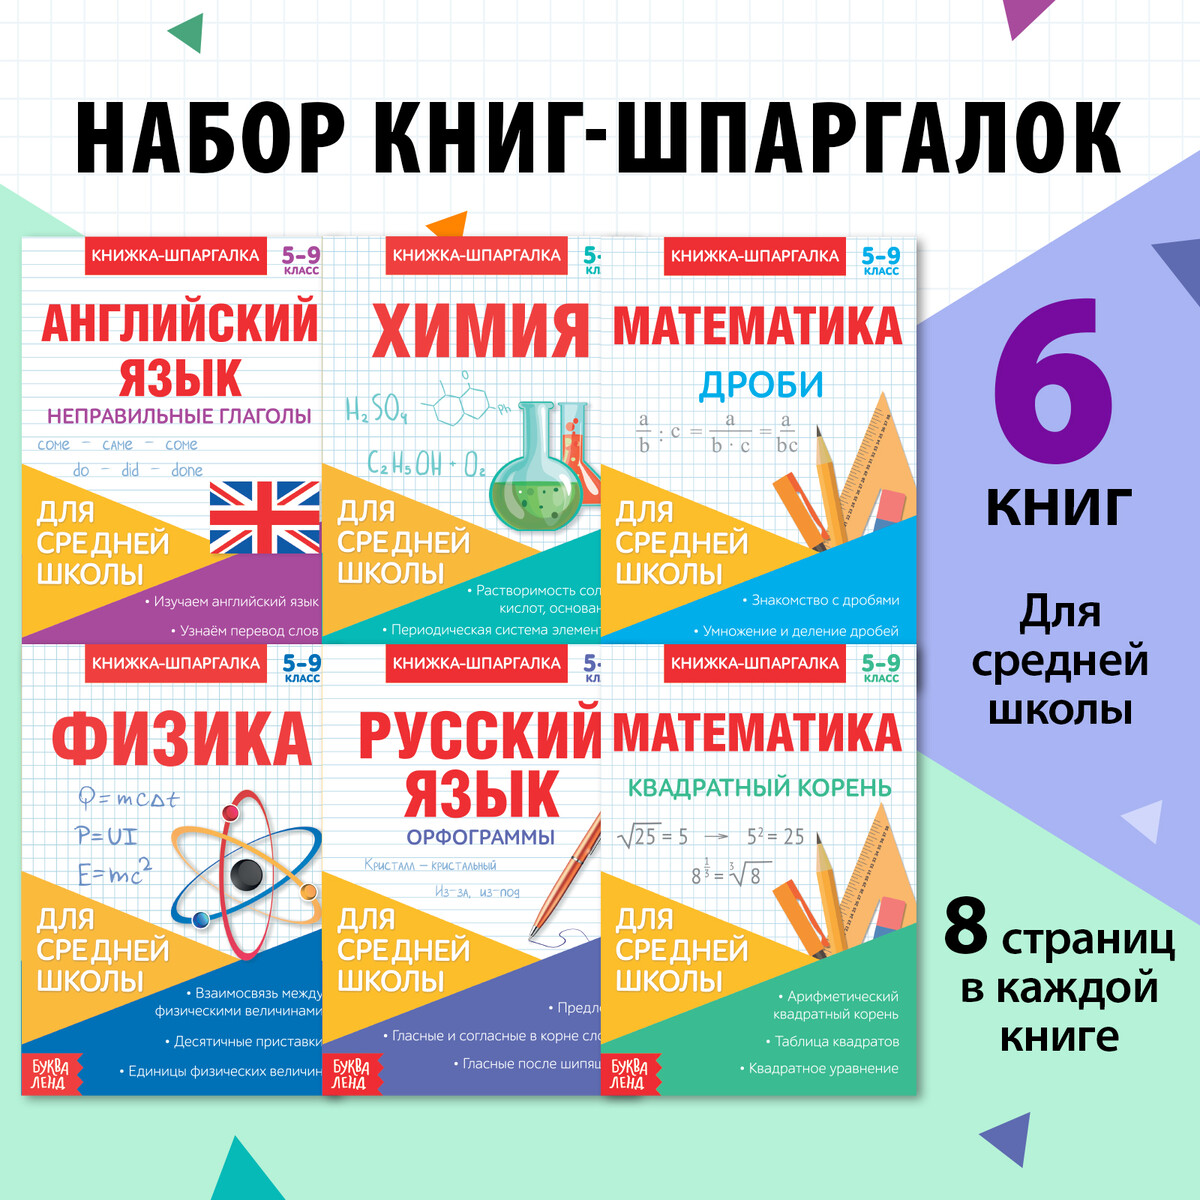 Книги-шпаргалки набор для средней школы, 8 стр. развивающий набор 2 в 1 три кота учим английский язык алфавит и мемо парочки